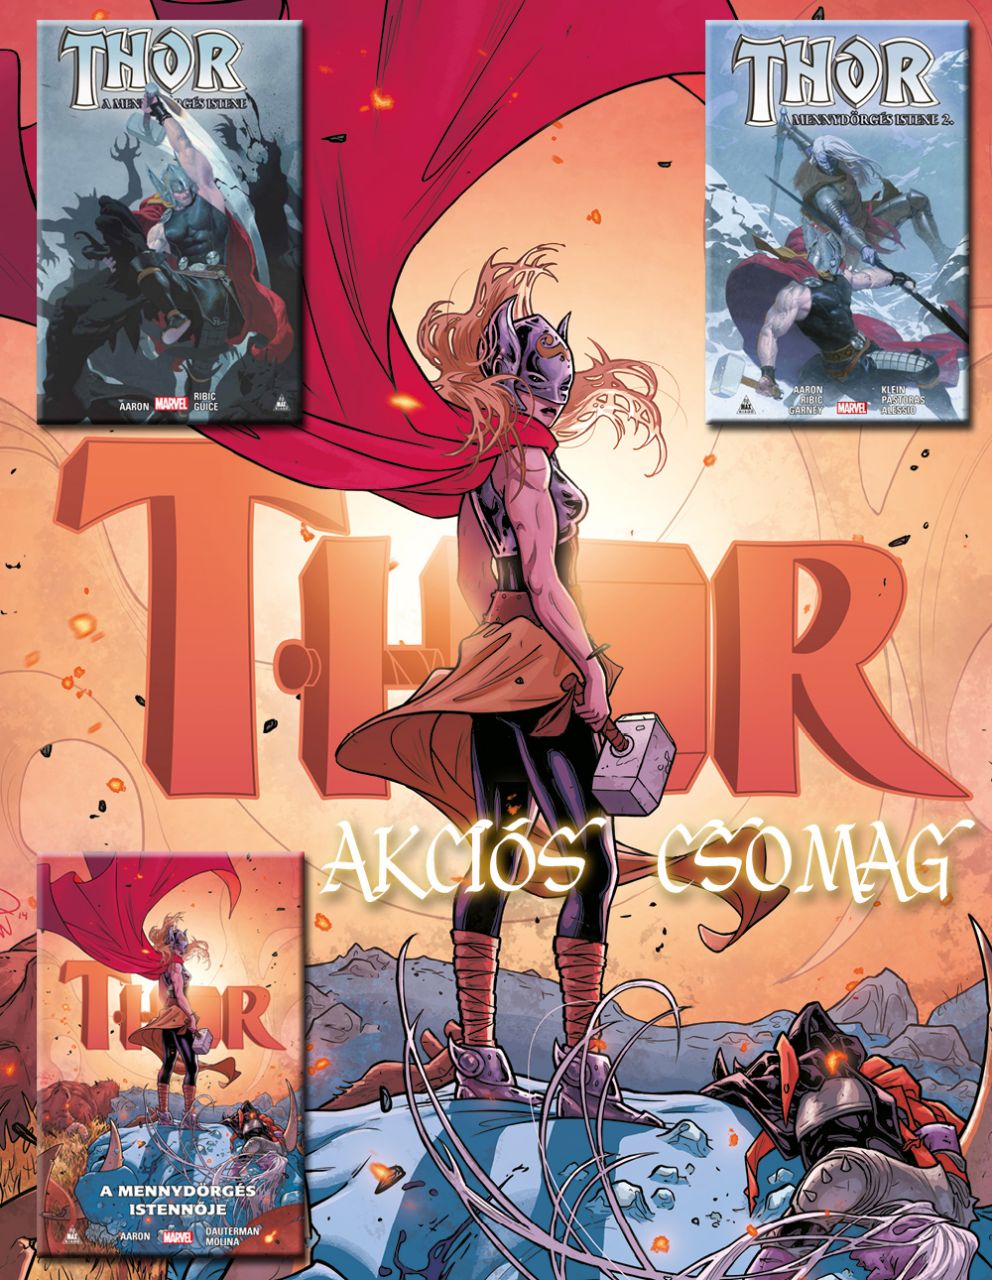 Thor keménytáblás képregény kedvezményes csomag (Thor: A mennydörgés istene 1-2, Thor: A mennydörgés istennője) 